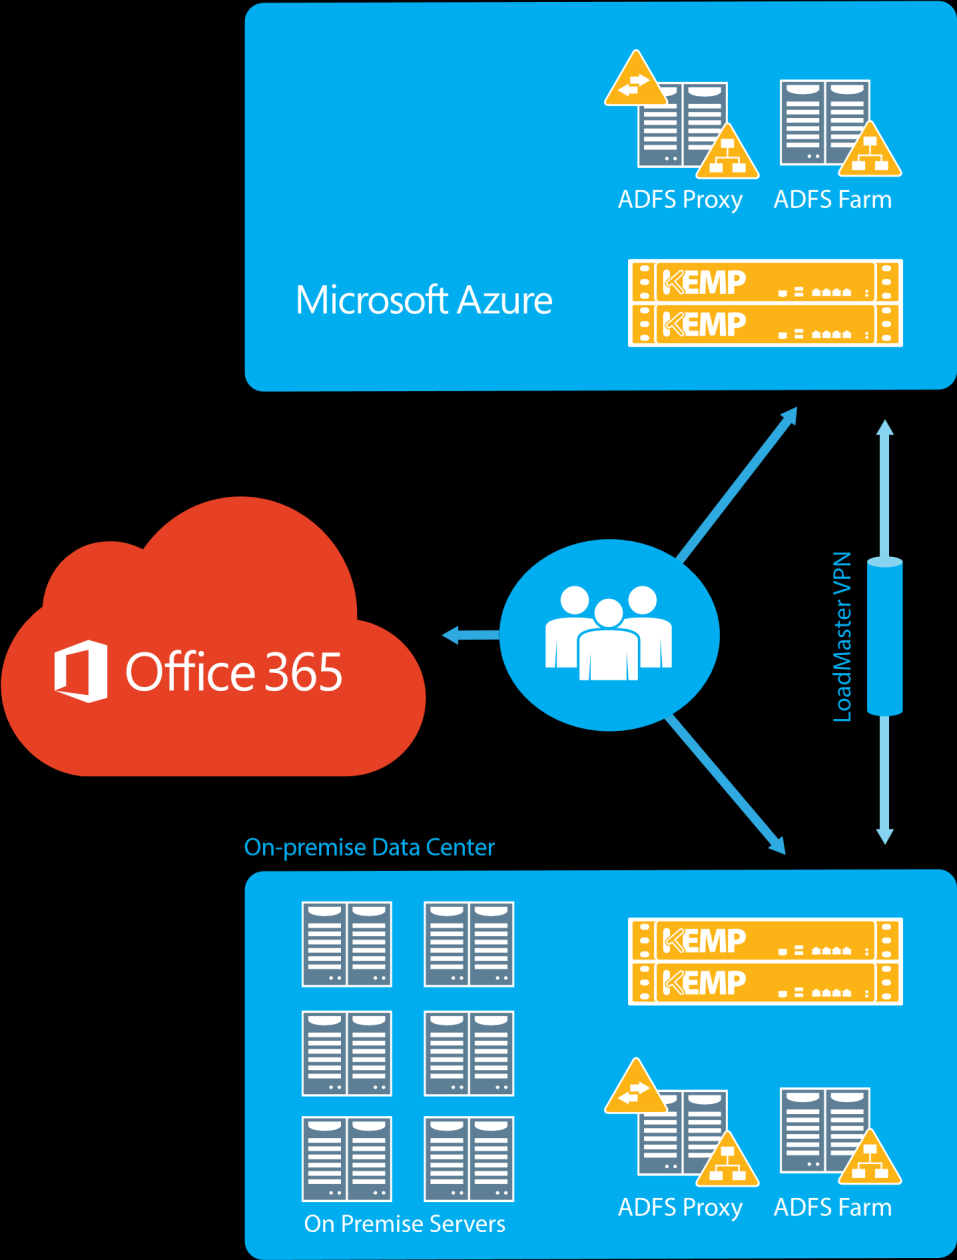 Office 365 Ein Unternehmen, das Office 365 und Microsoft Active Directory Federation Services (ADFS) verwendet, möchte den ständigen Zugriff auf die Office 365-Produktivitätstools wie Outlook Web App